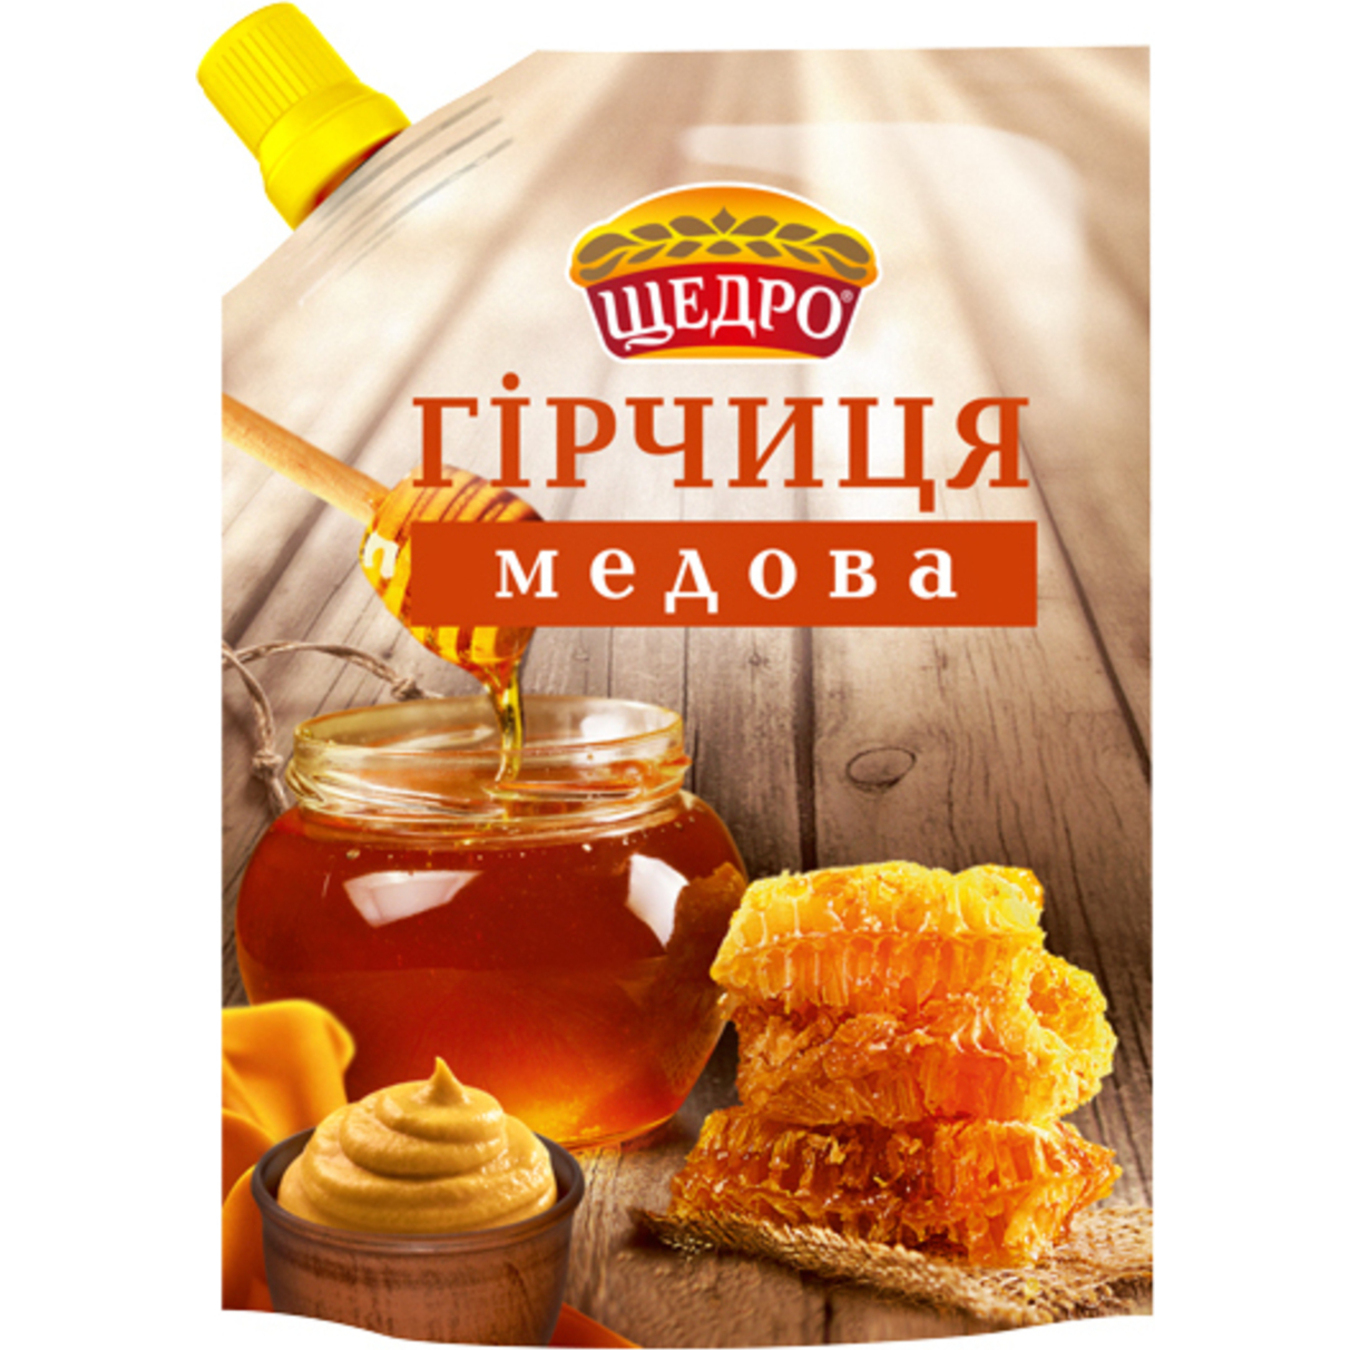 Schedro Honey Mustard 120g